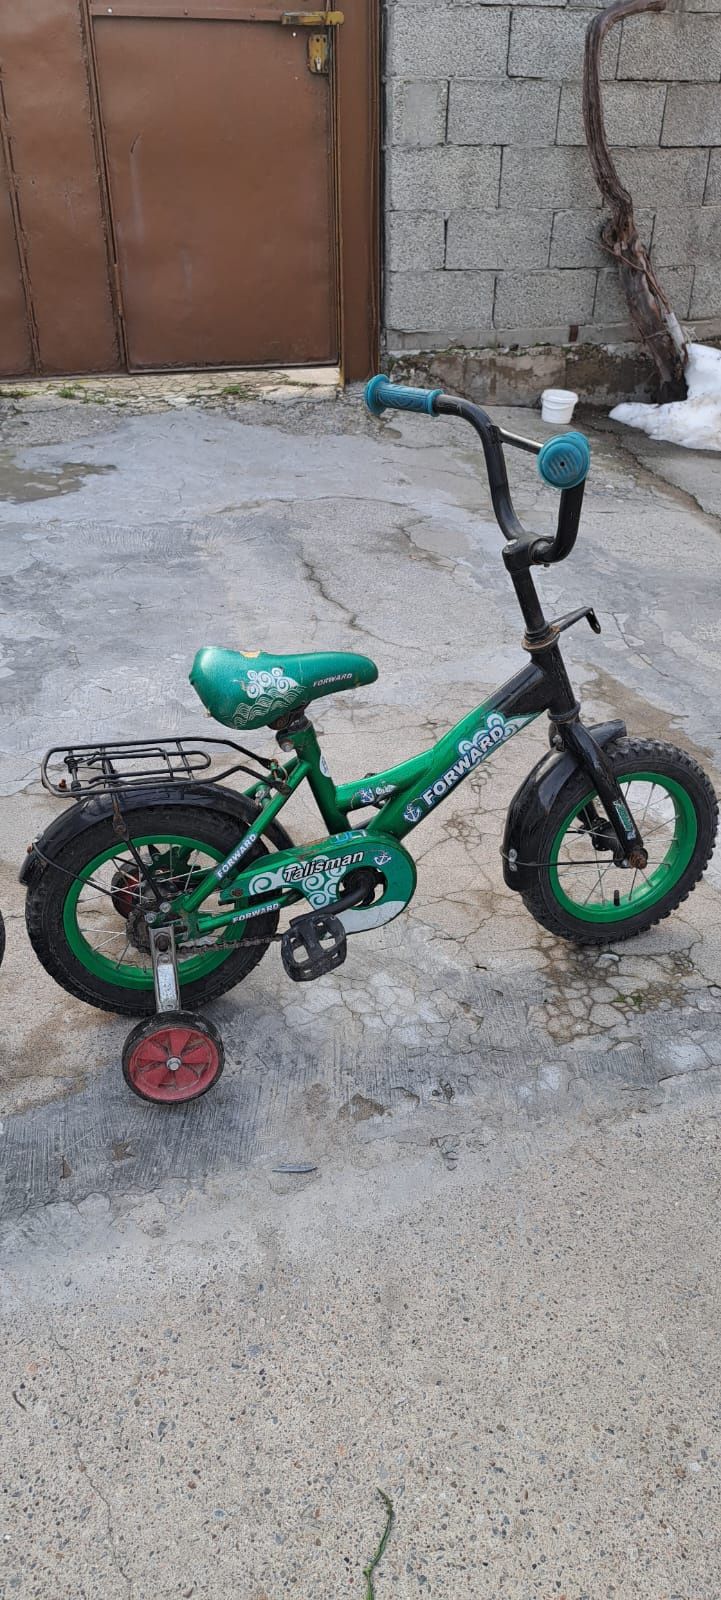 Велосипед Детский в Идеальном состоянии Р12,Р12